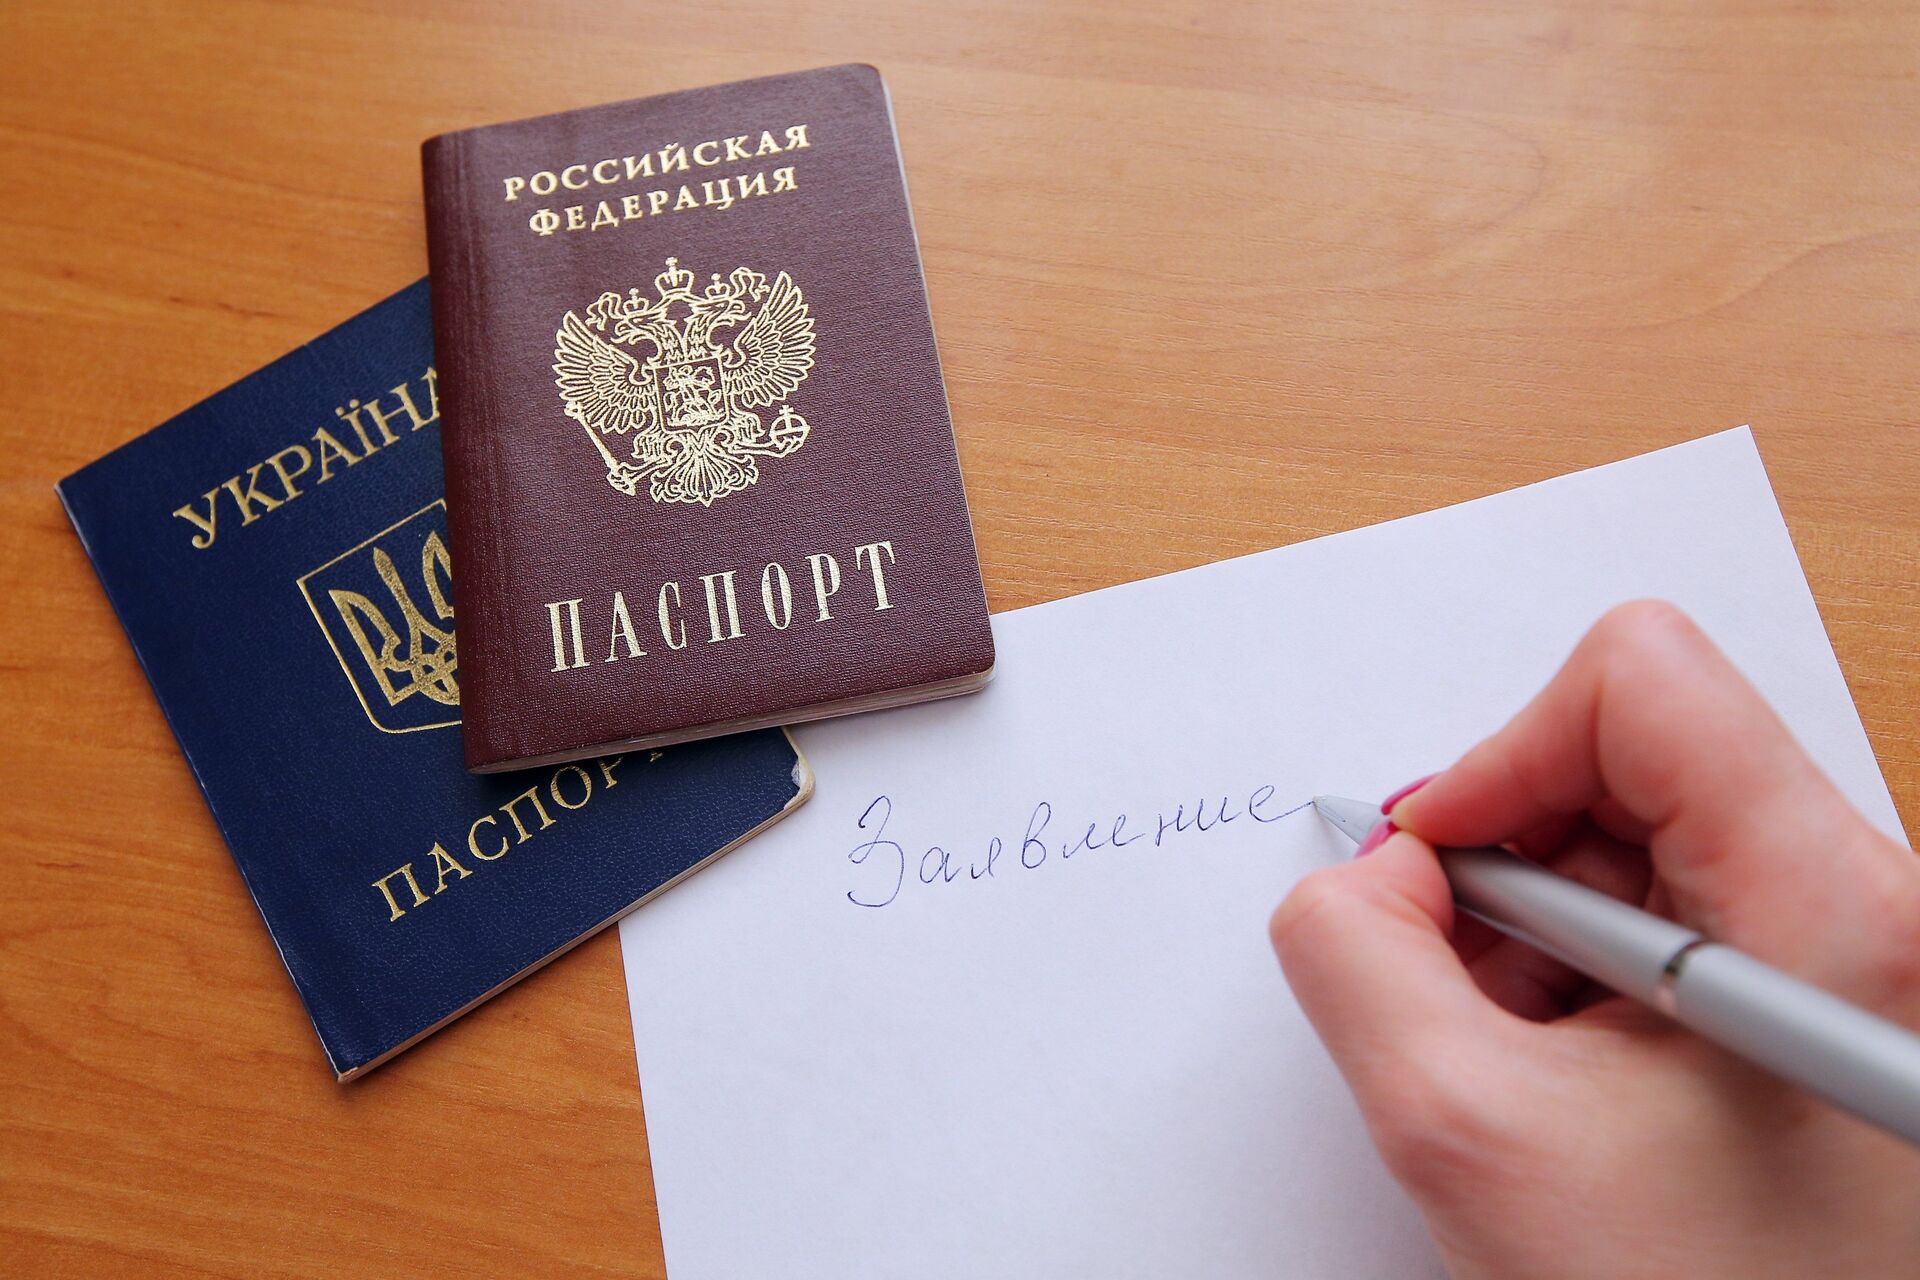 Гражданство рф для украинцев: как получить российское гражданство - народный советникъ